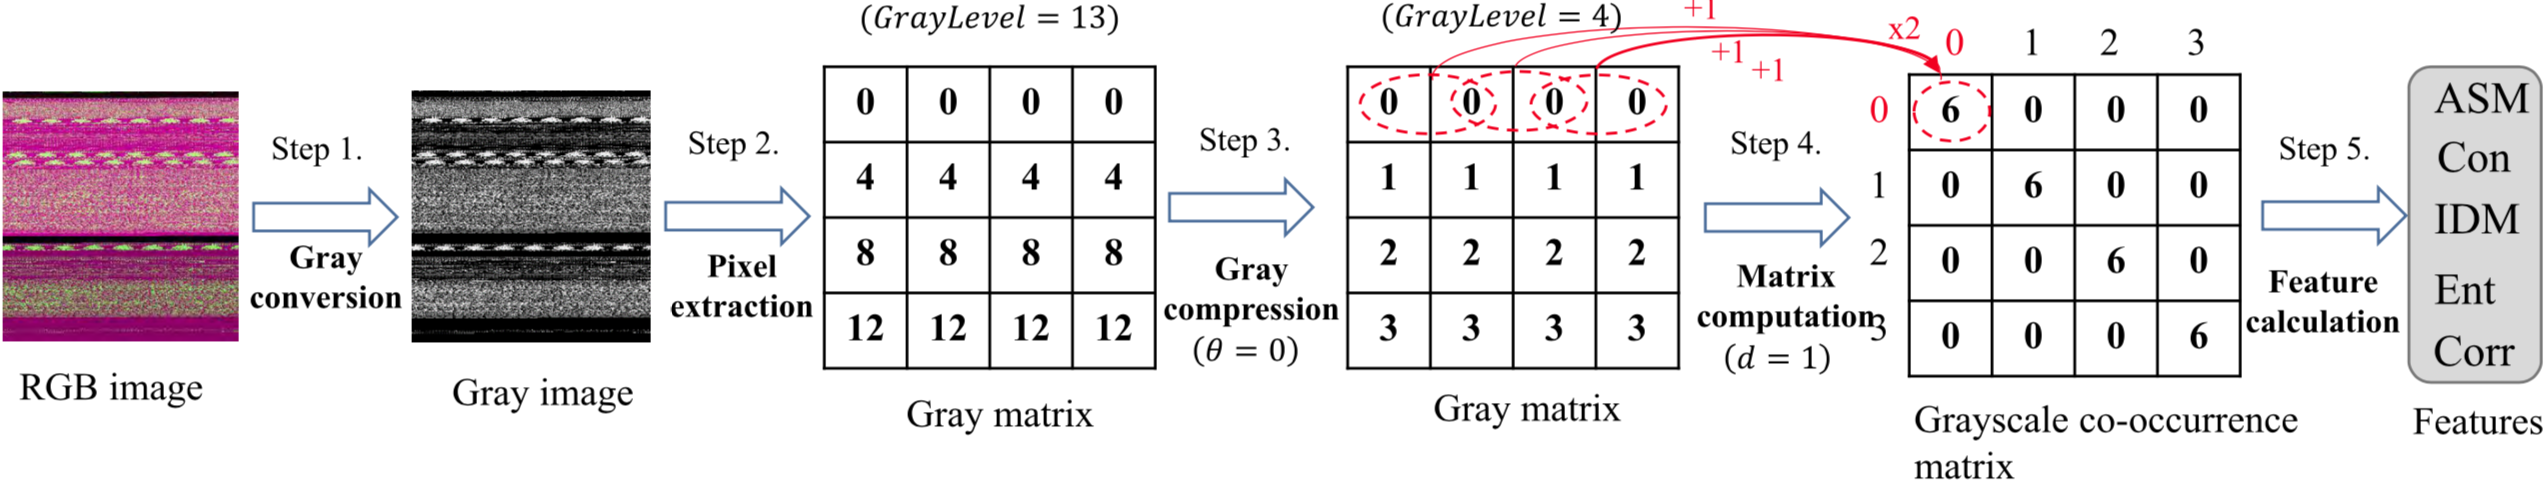 灰度共生矩阵纹理特征提取过程示意图